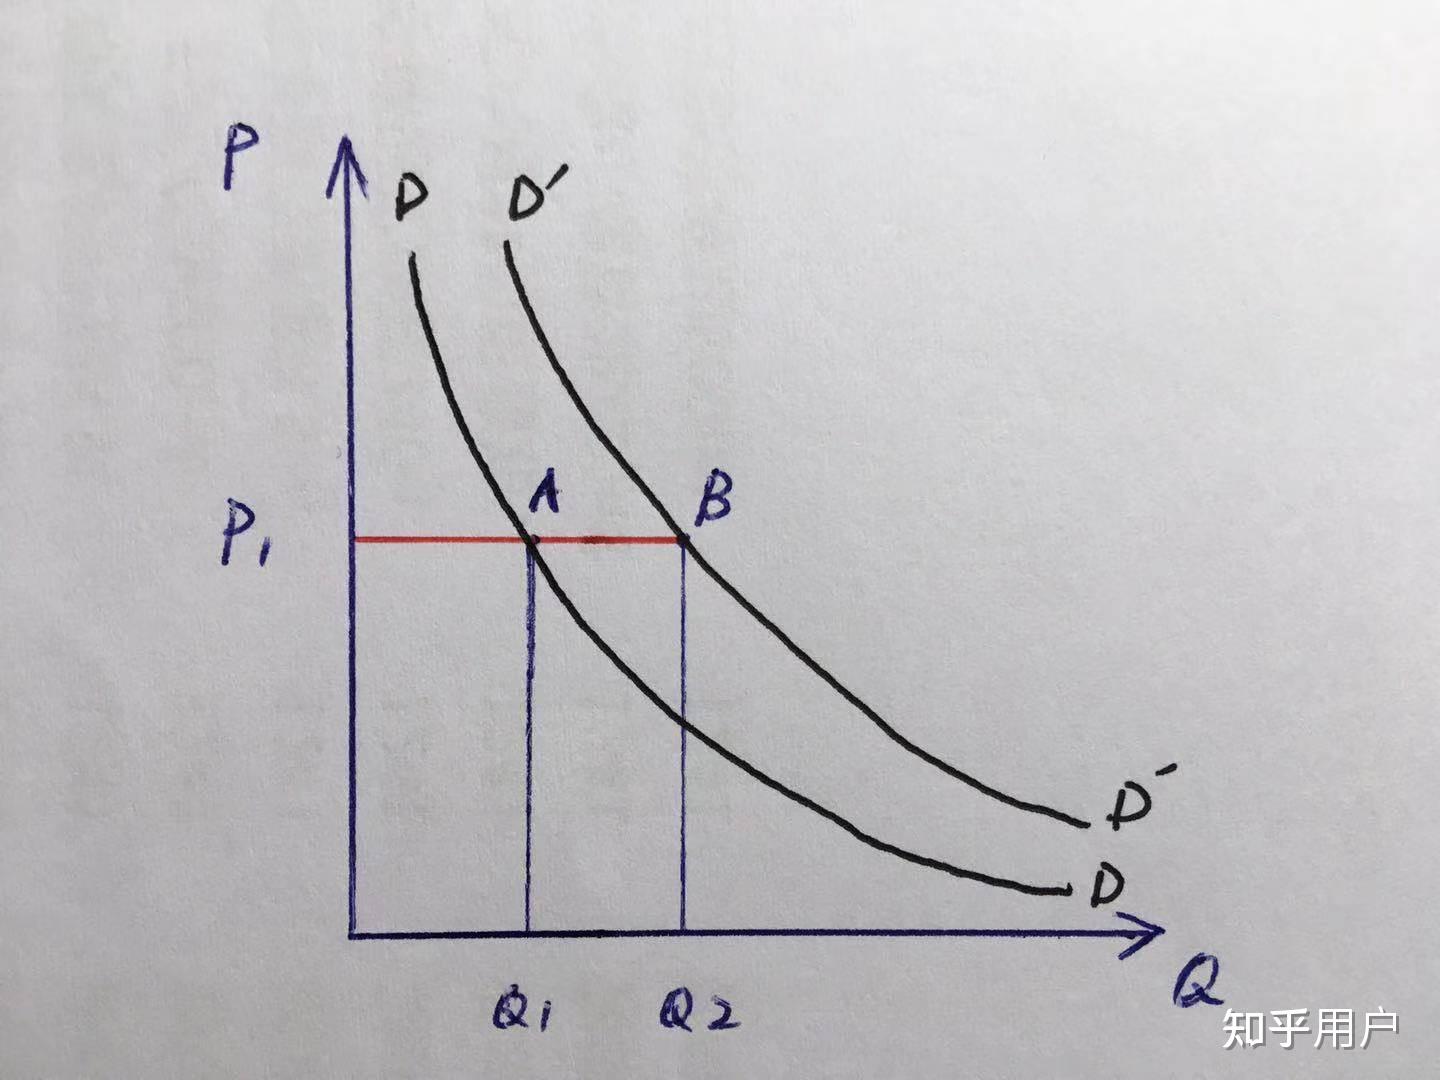 为什么需求曲线会右上移? 